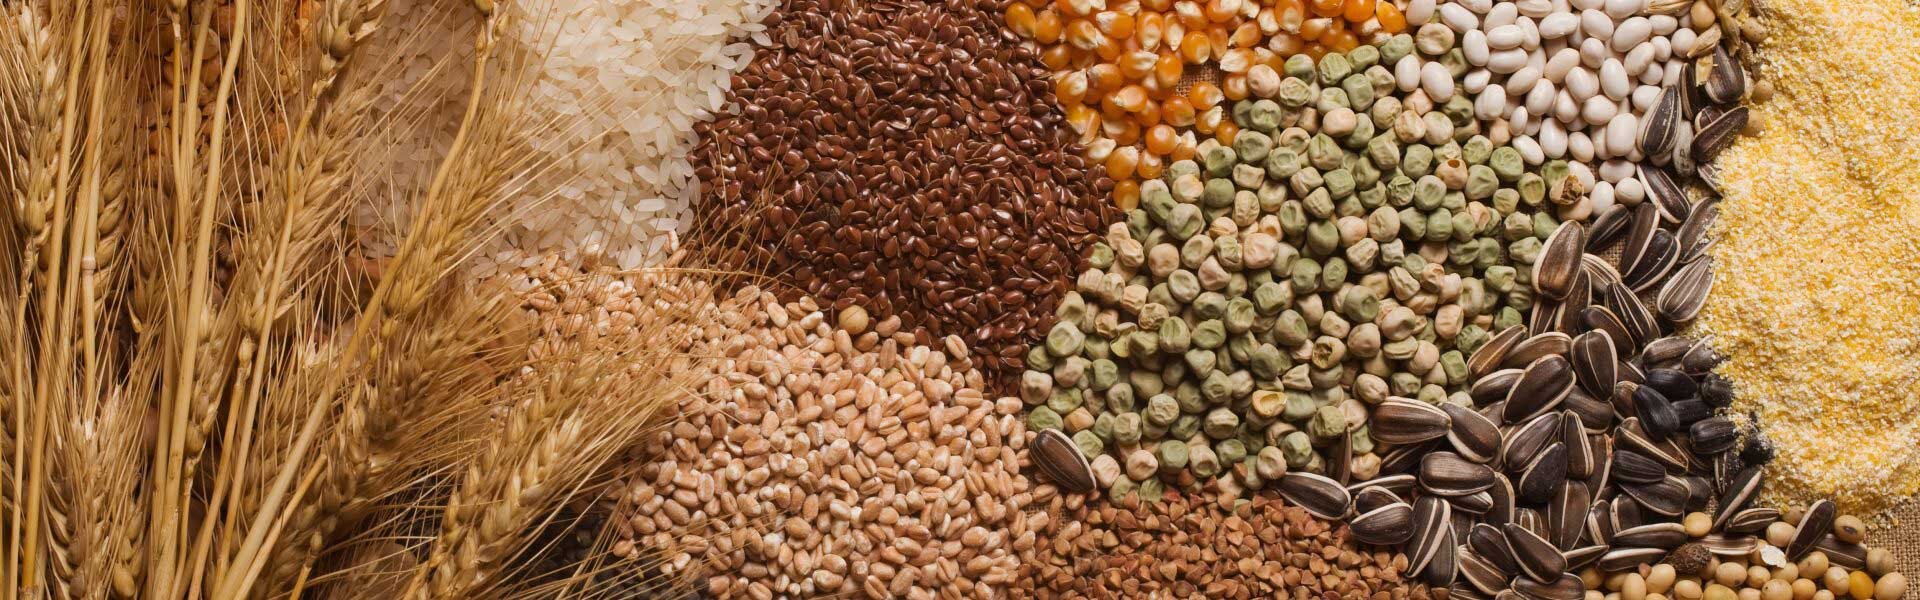 Зерновые корма. Зерно злаковых и бобовых культур